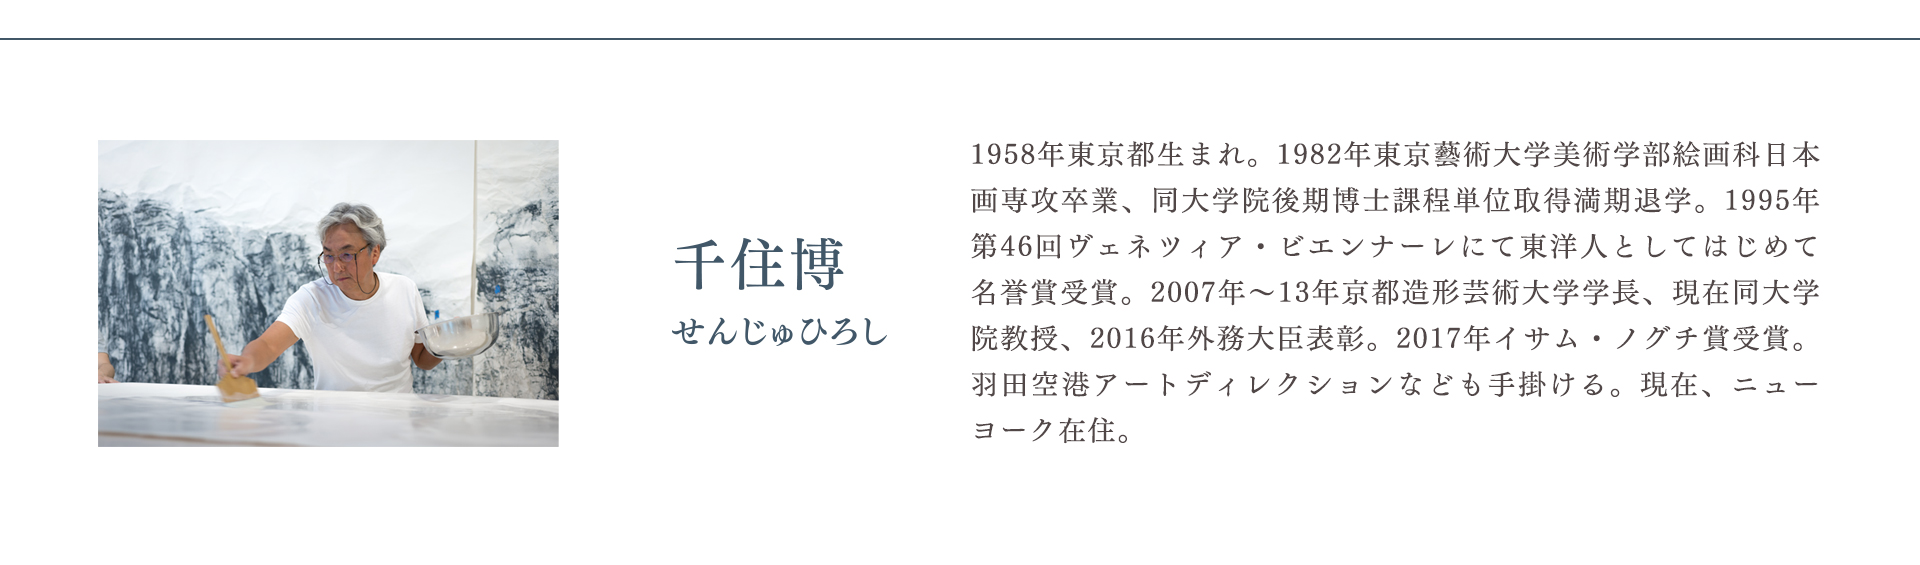 高野山金剛峯寺 襖絵完成記念 千住 博展 ―日本の美を極め、世界の美を拓く―